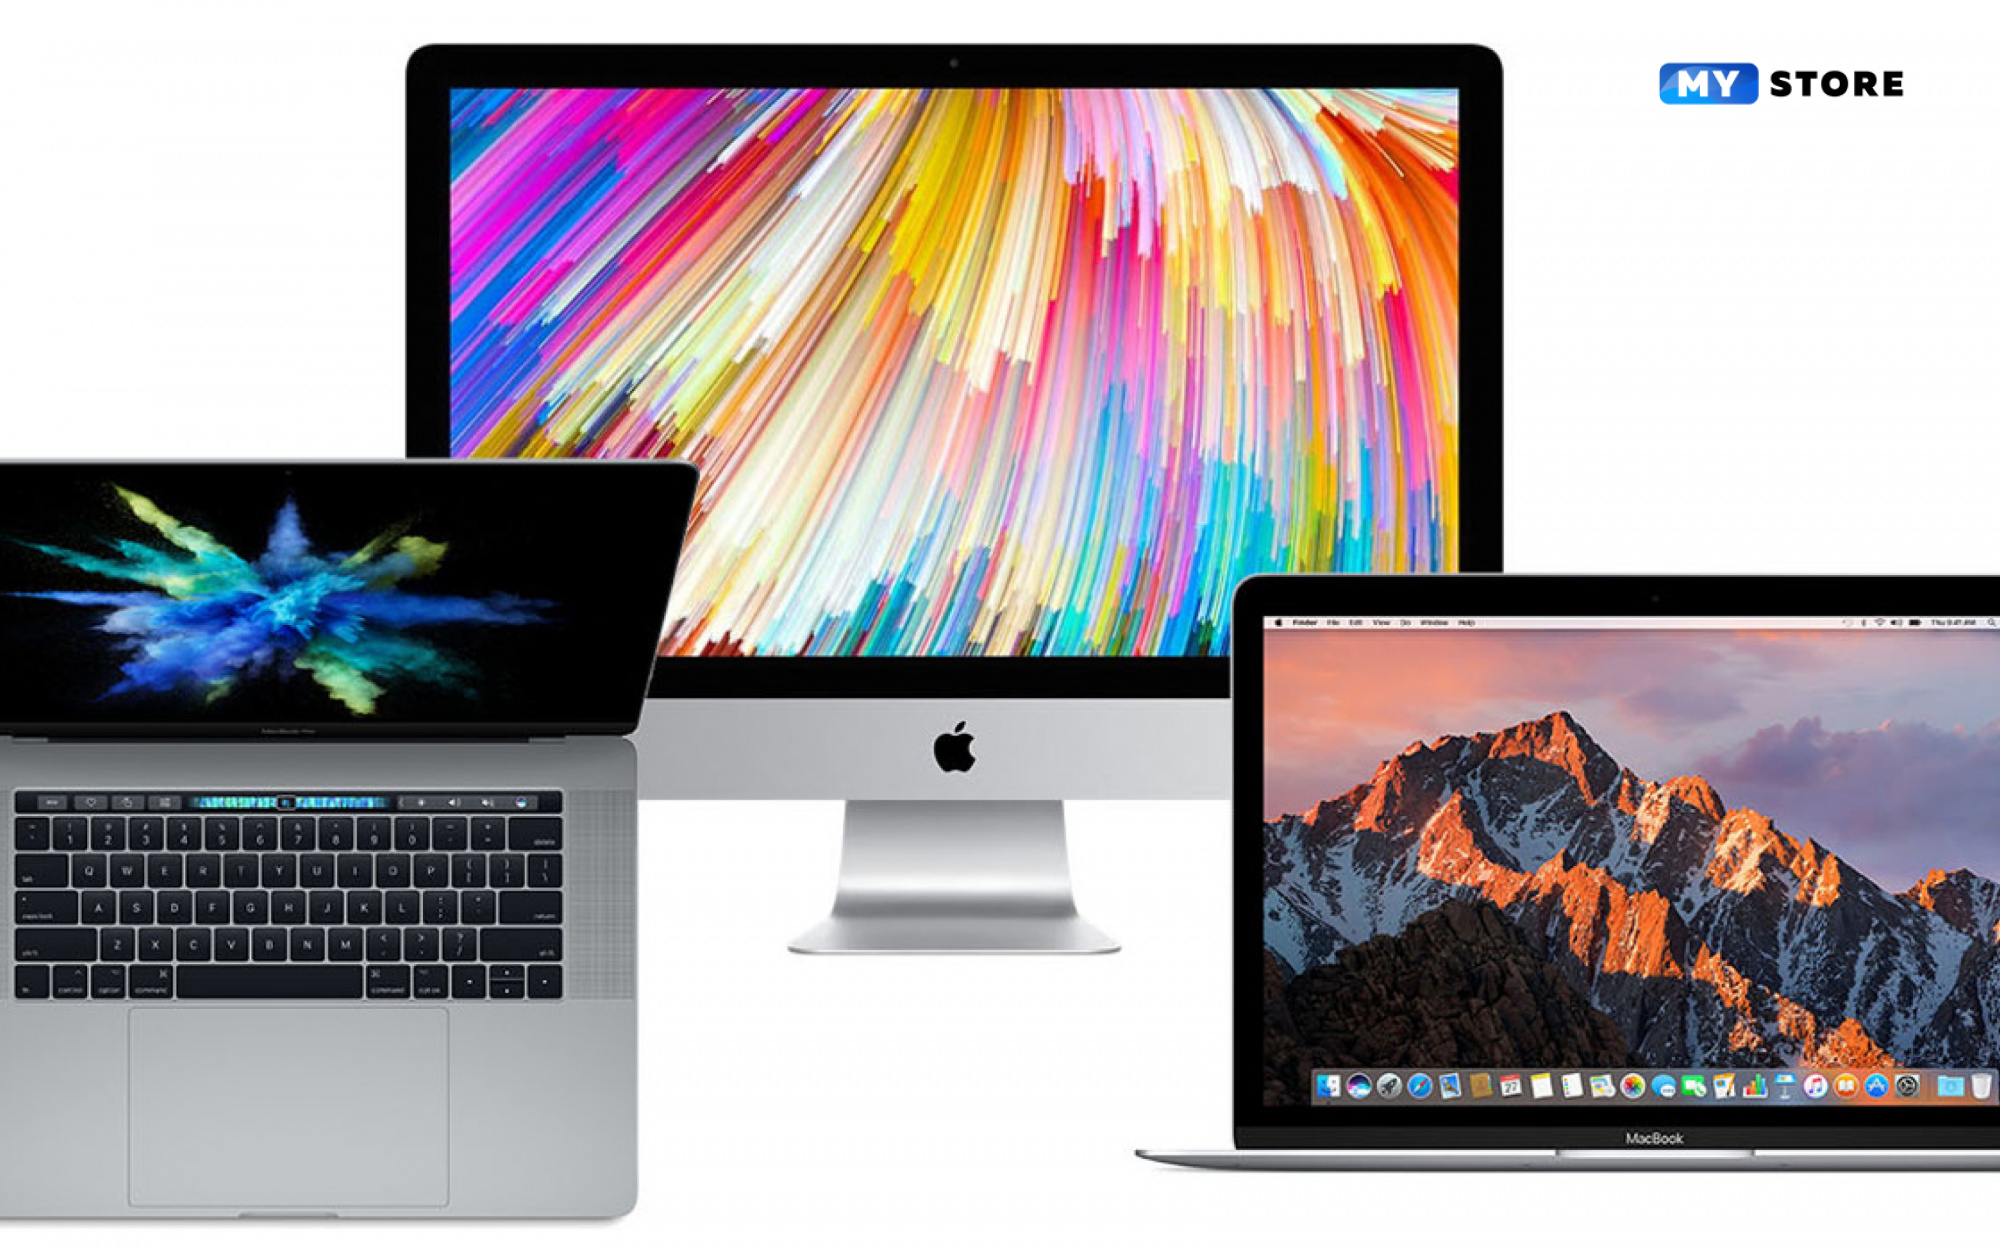  iMac или MacBook Pro: что выбрать?